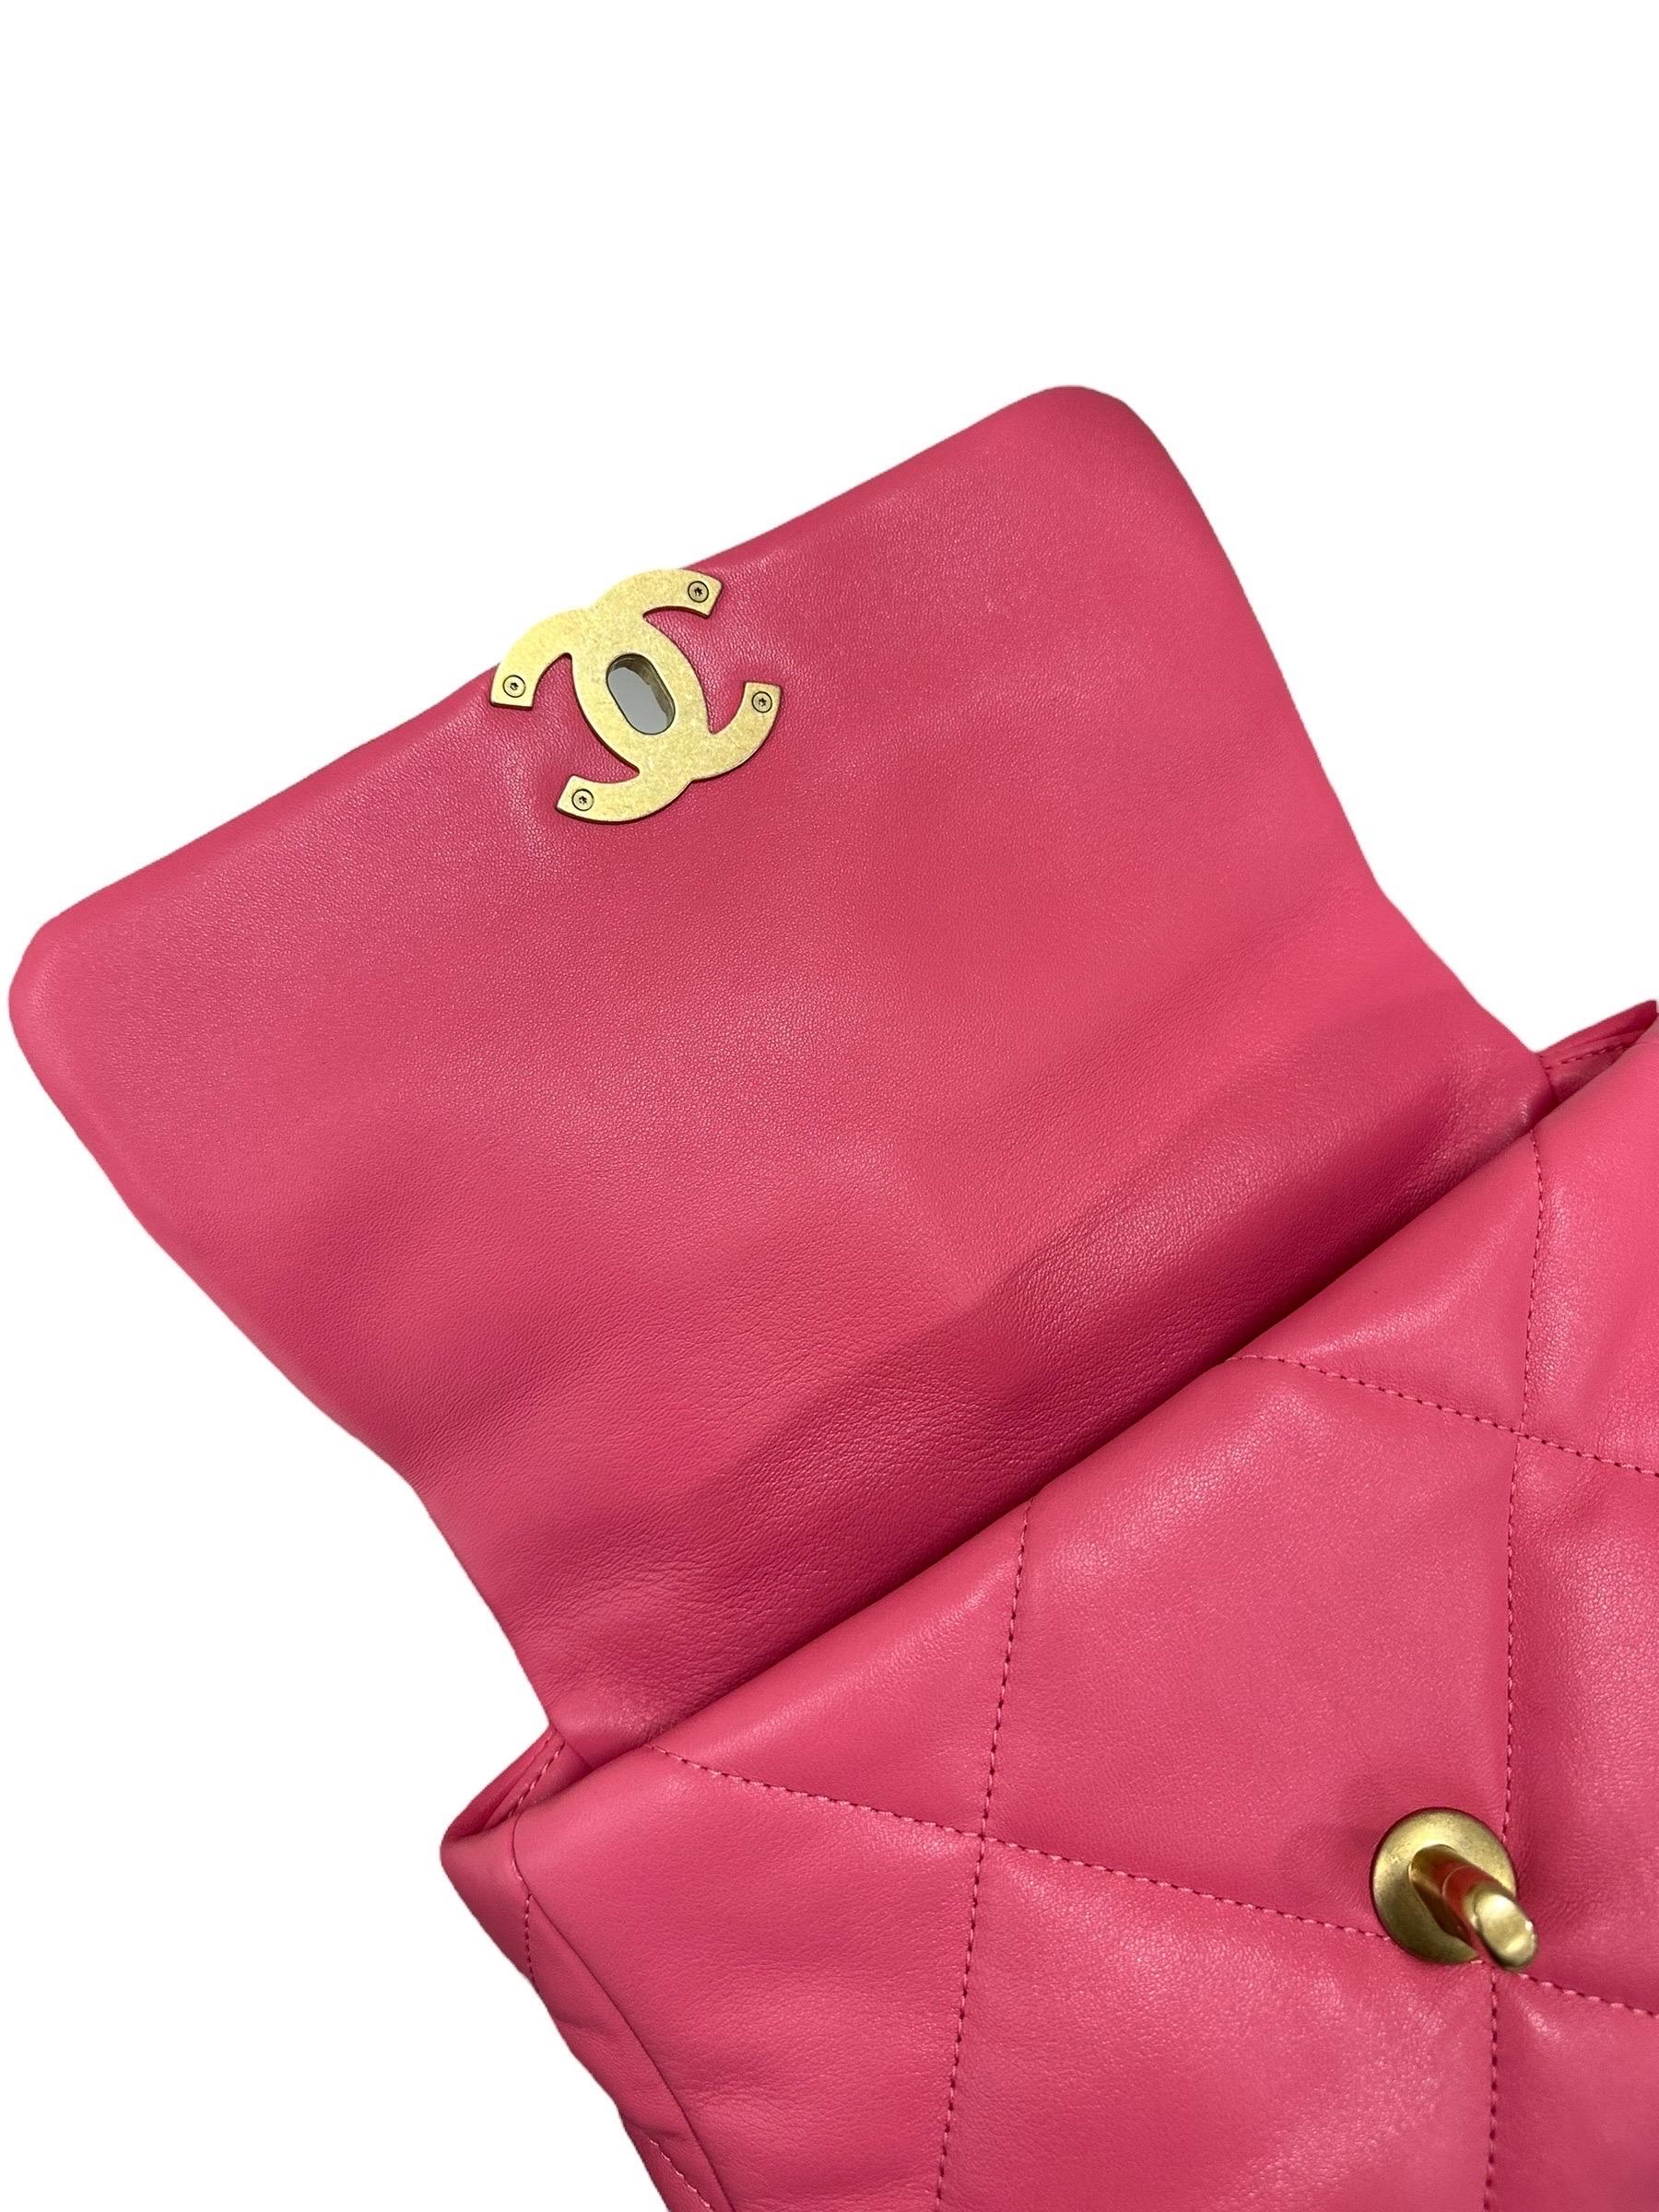 Chanel 19 Piccola Rosa Borsa a Tracolla 2020 For Sale 11